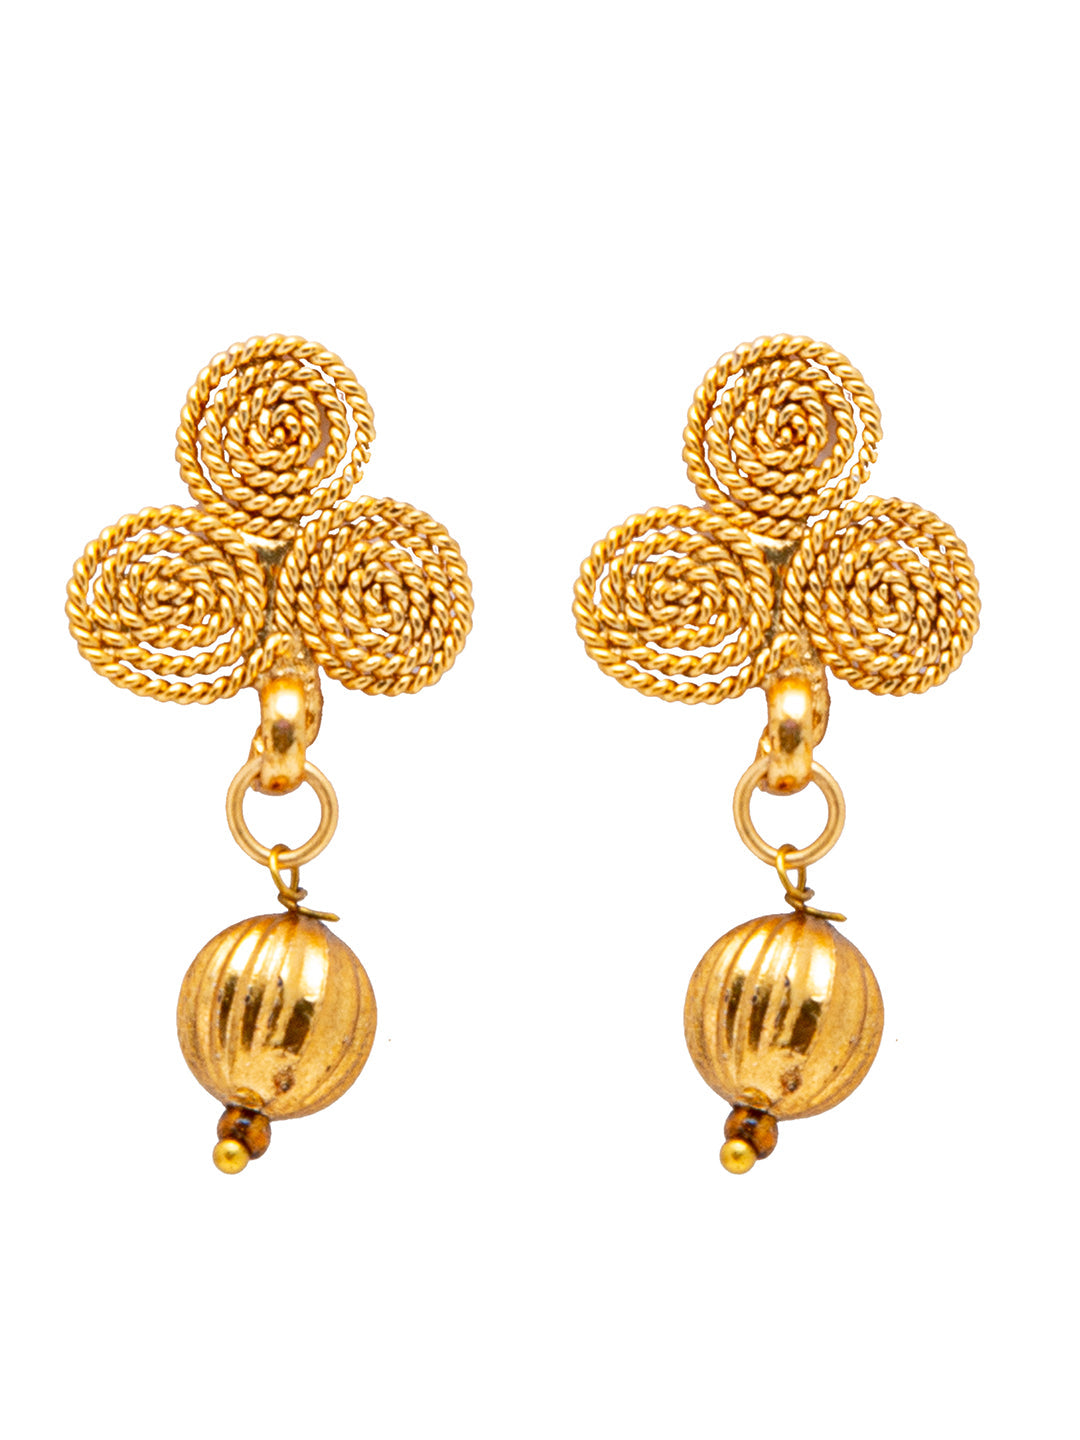 22K Yellow Gold Earrings, Gold Jewelry, Handmade Vintage Look Indian  Earrings | eBay